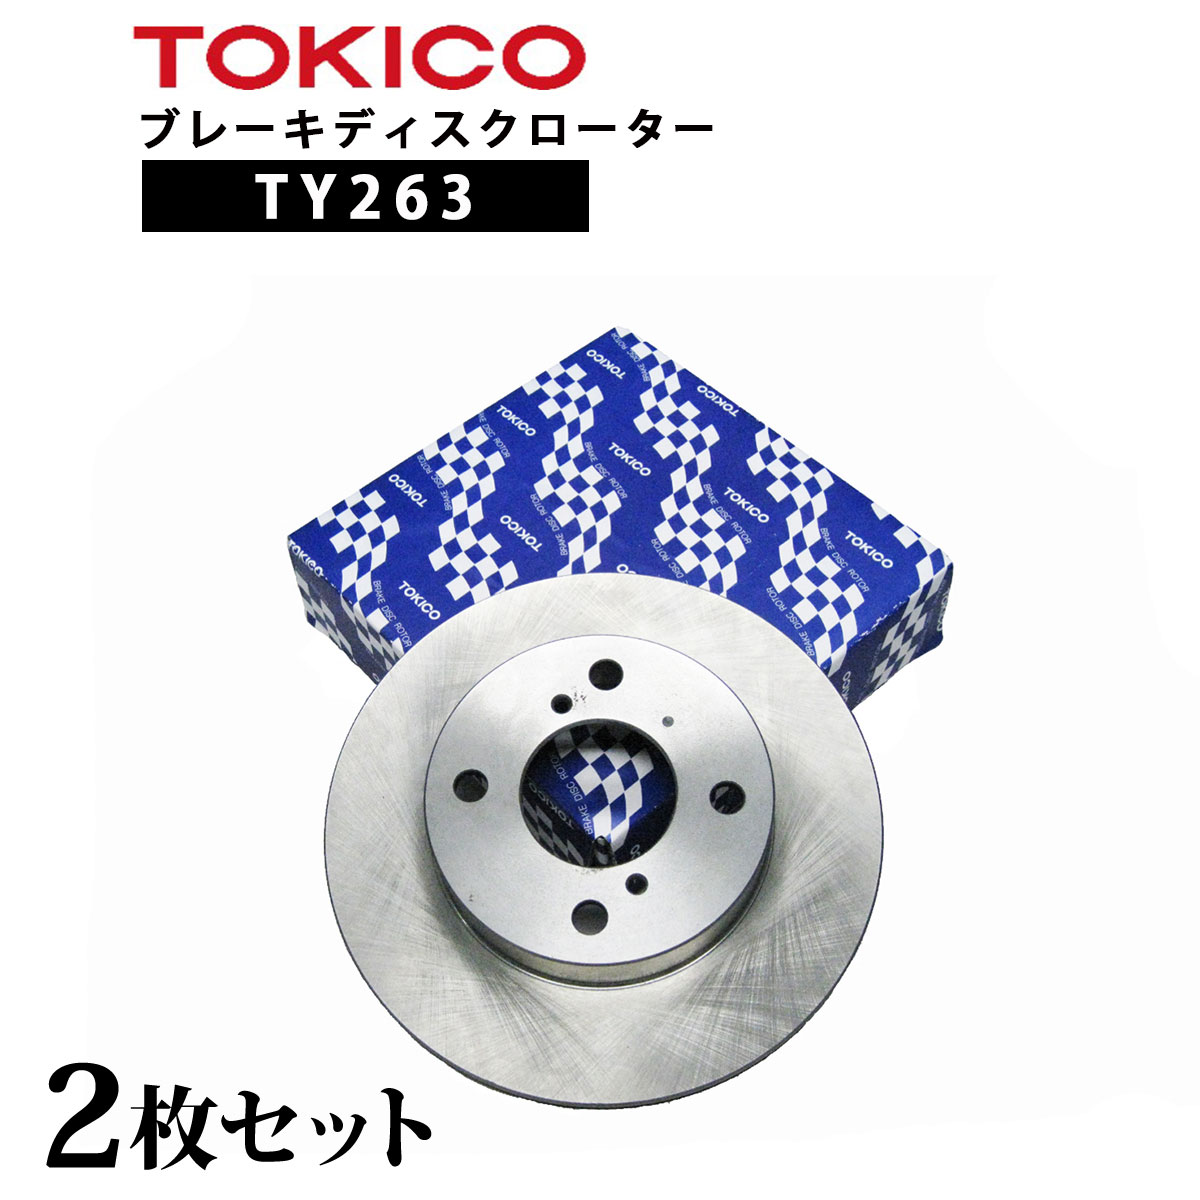 TY263 TOKICO ブレーキディスクローター リヤ 2枚 左右セット トキコ 日立| 適合 純正 三菱4615A125 デリカD5 R D5 他社 C6-044BP D6R781J